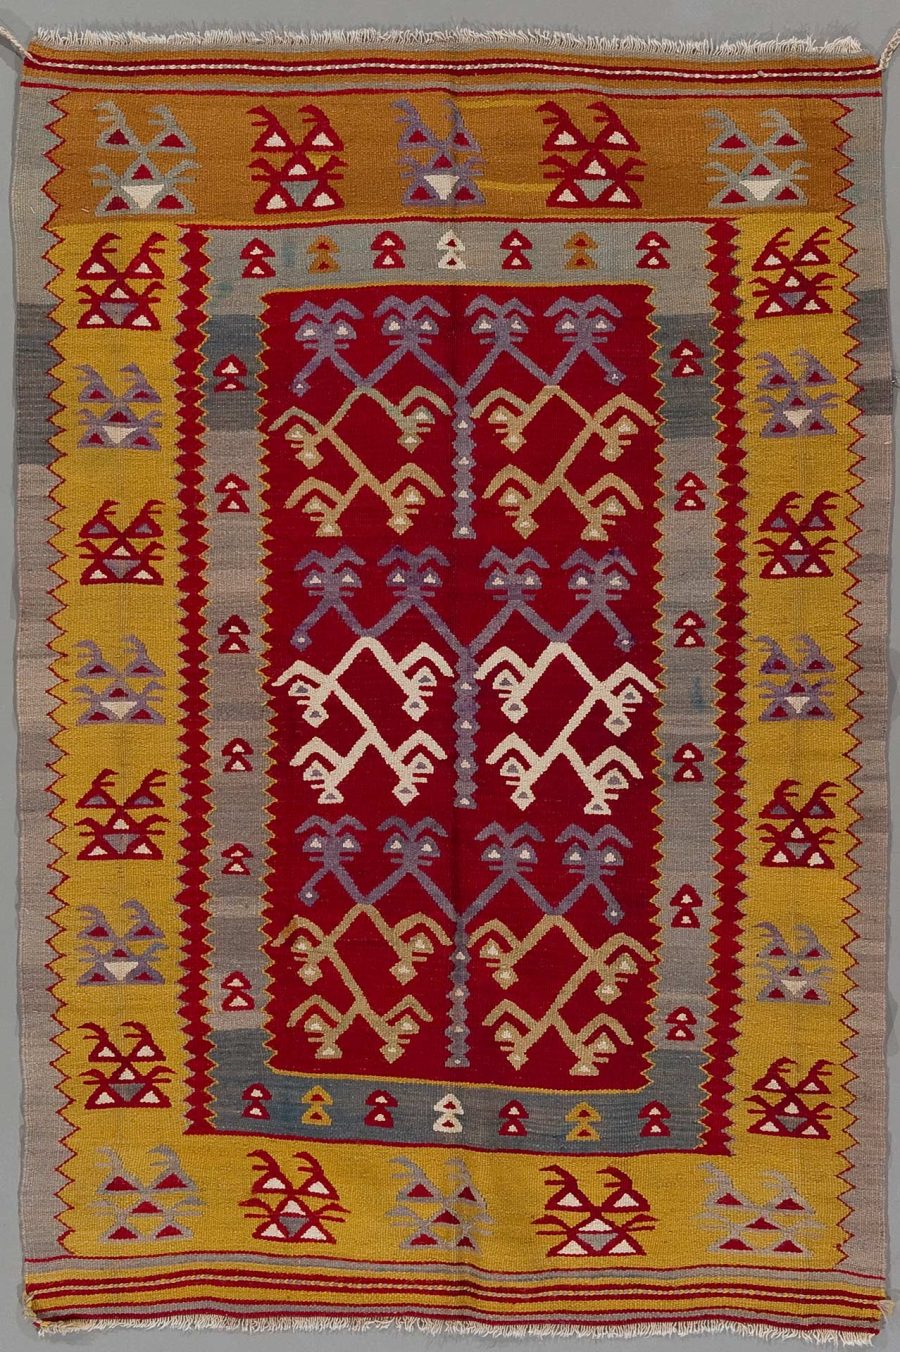 Handgewebter Teppich mit traditionellen geometrischen Mustern in Rot, Gelb, Weiß und Grau sowie Fransen an den Enden.